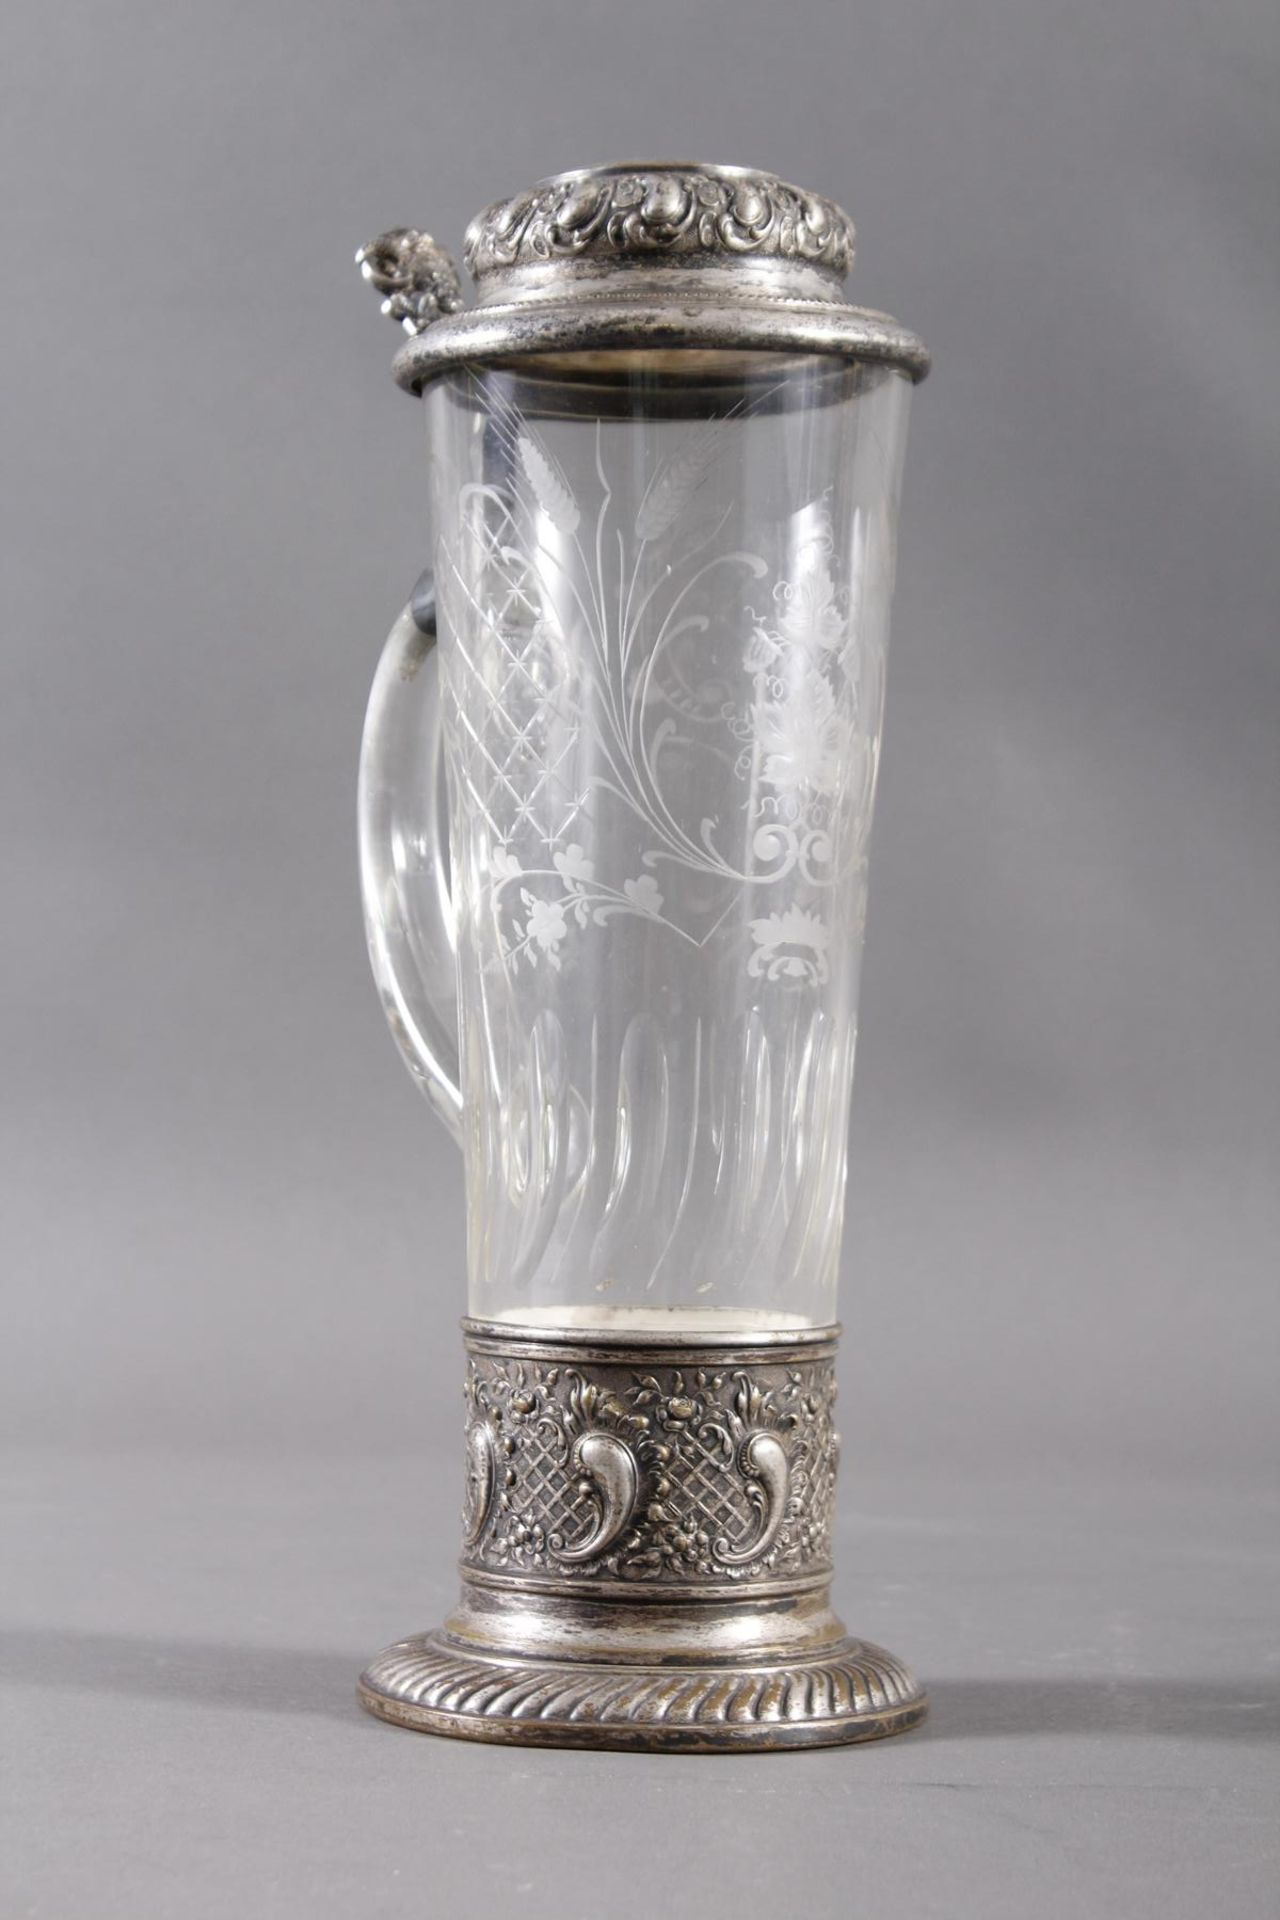 WMF-Historismus Trinkkrug um 1890farbloses konisches Glas  mit  geschliffenem Ranken und